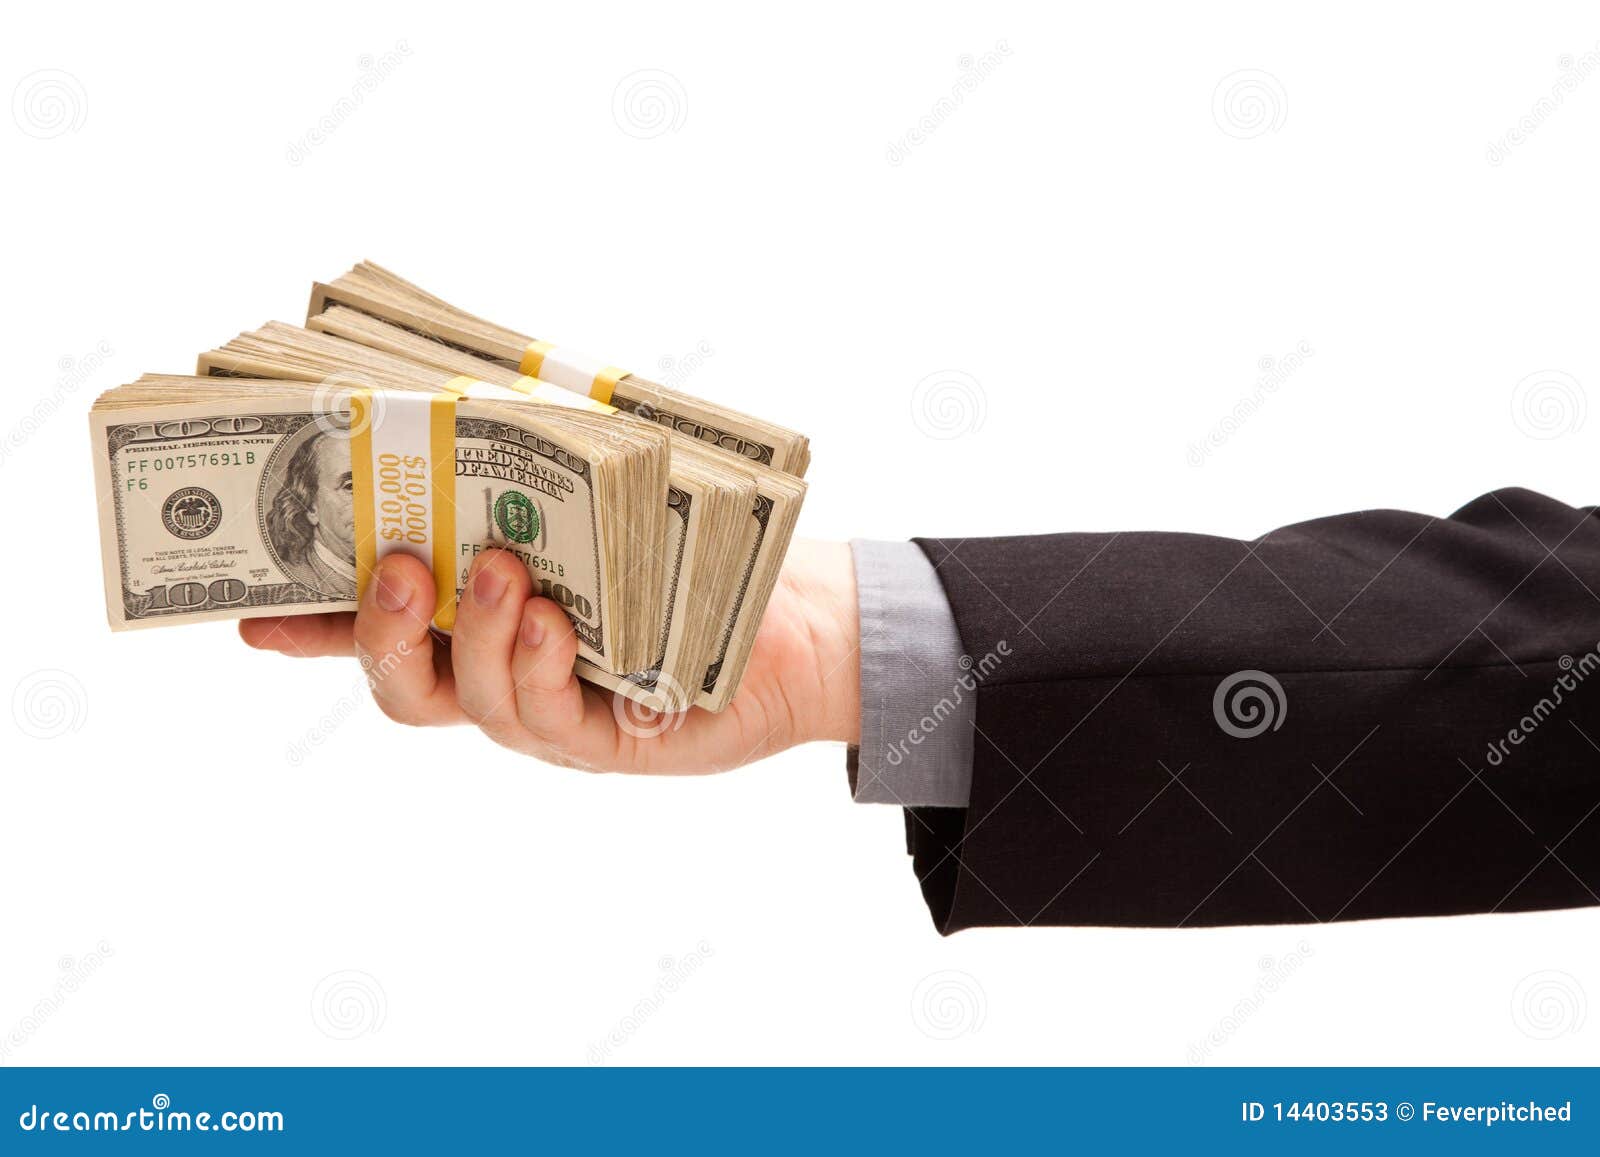 man handing over hundreds of dollars